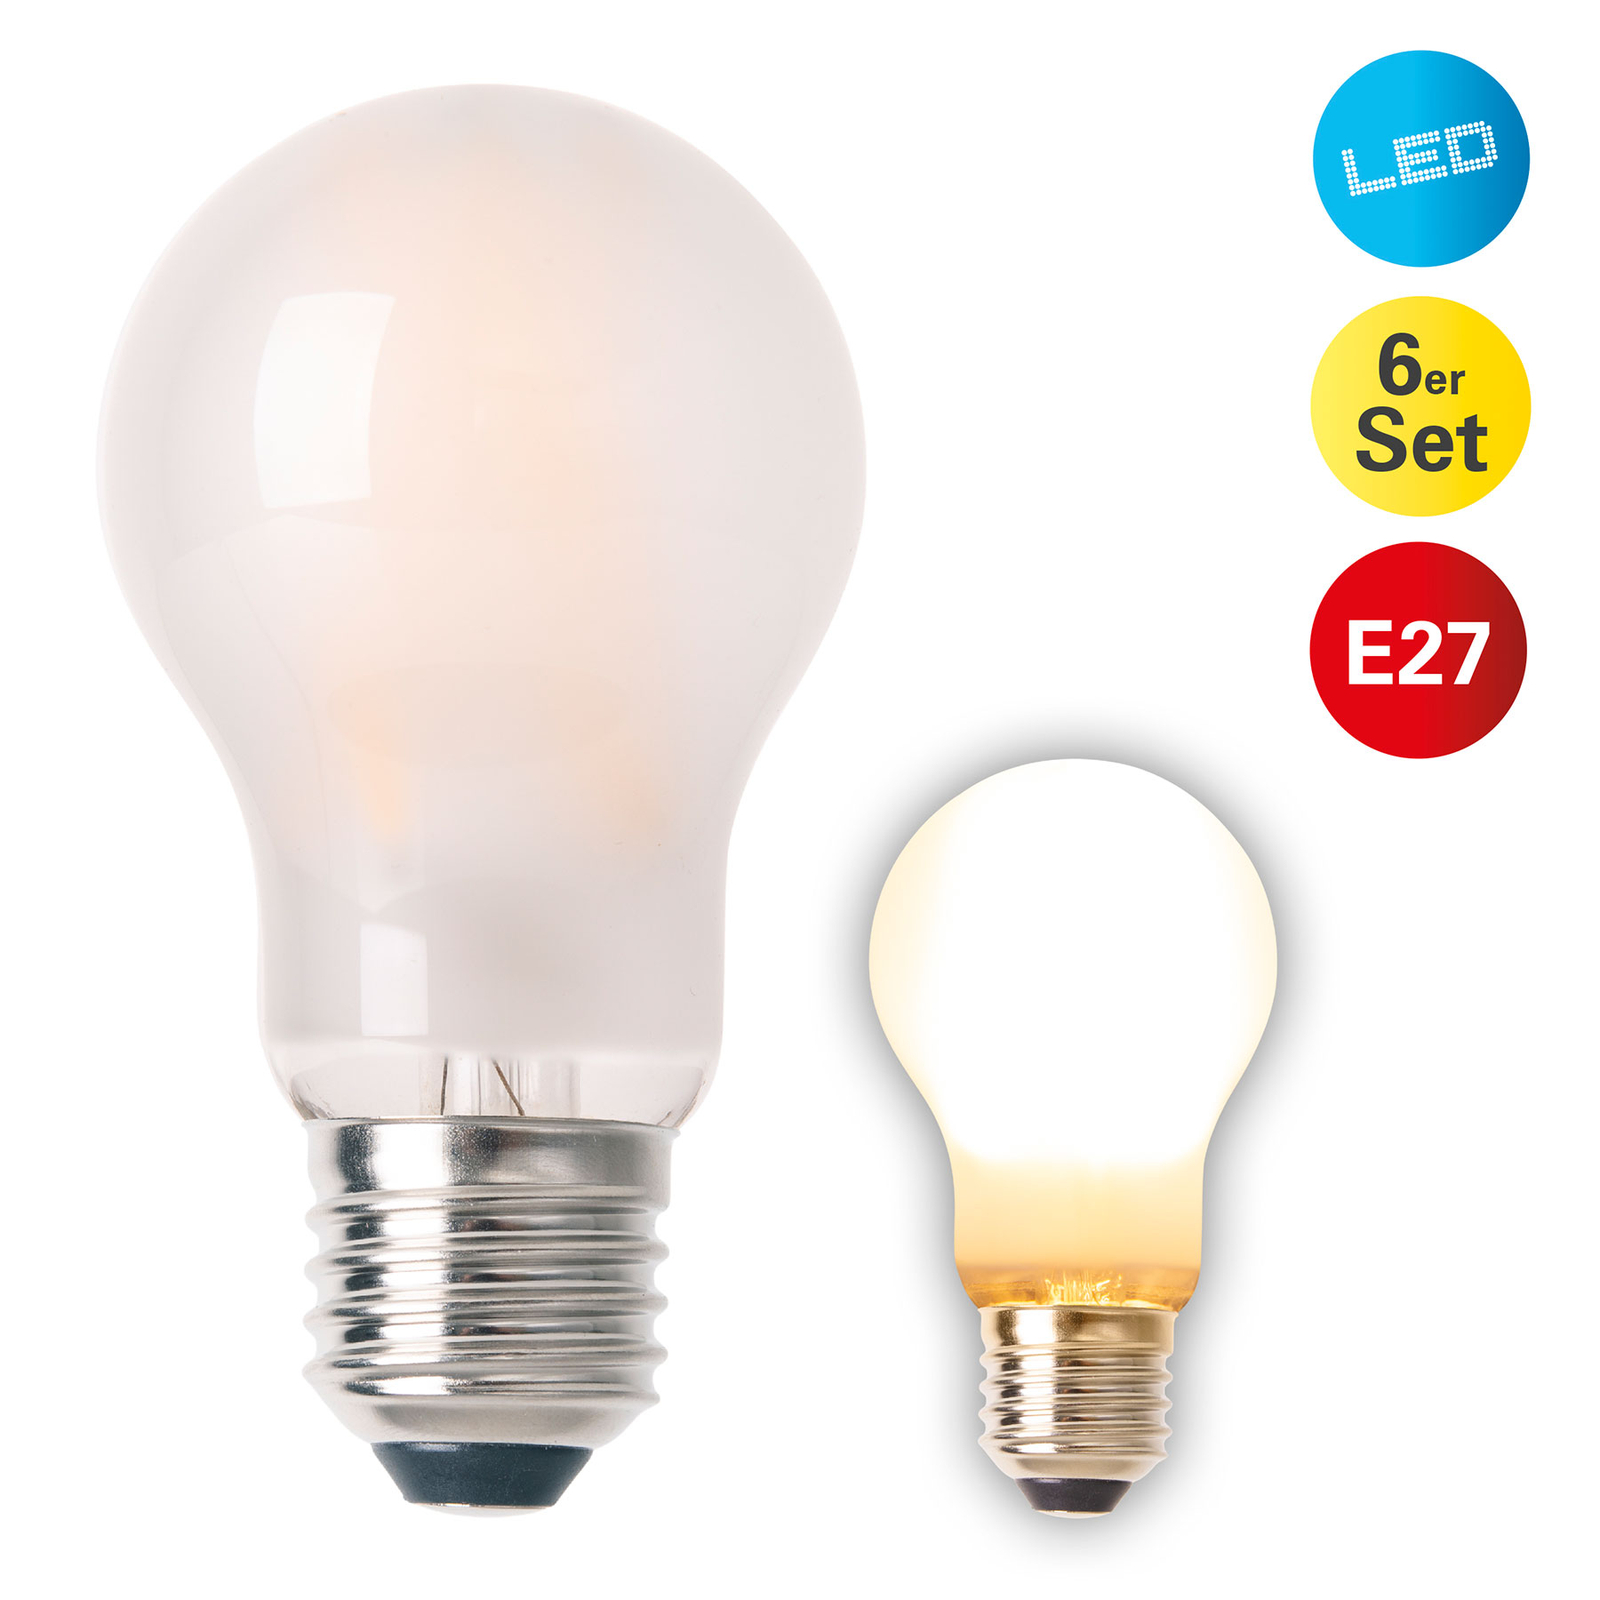 Lampada LED E27 8.3W 750 lumen branco quente conjunto de 6